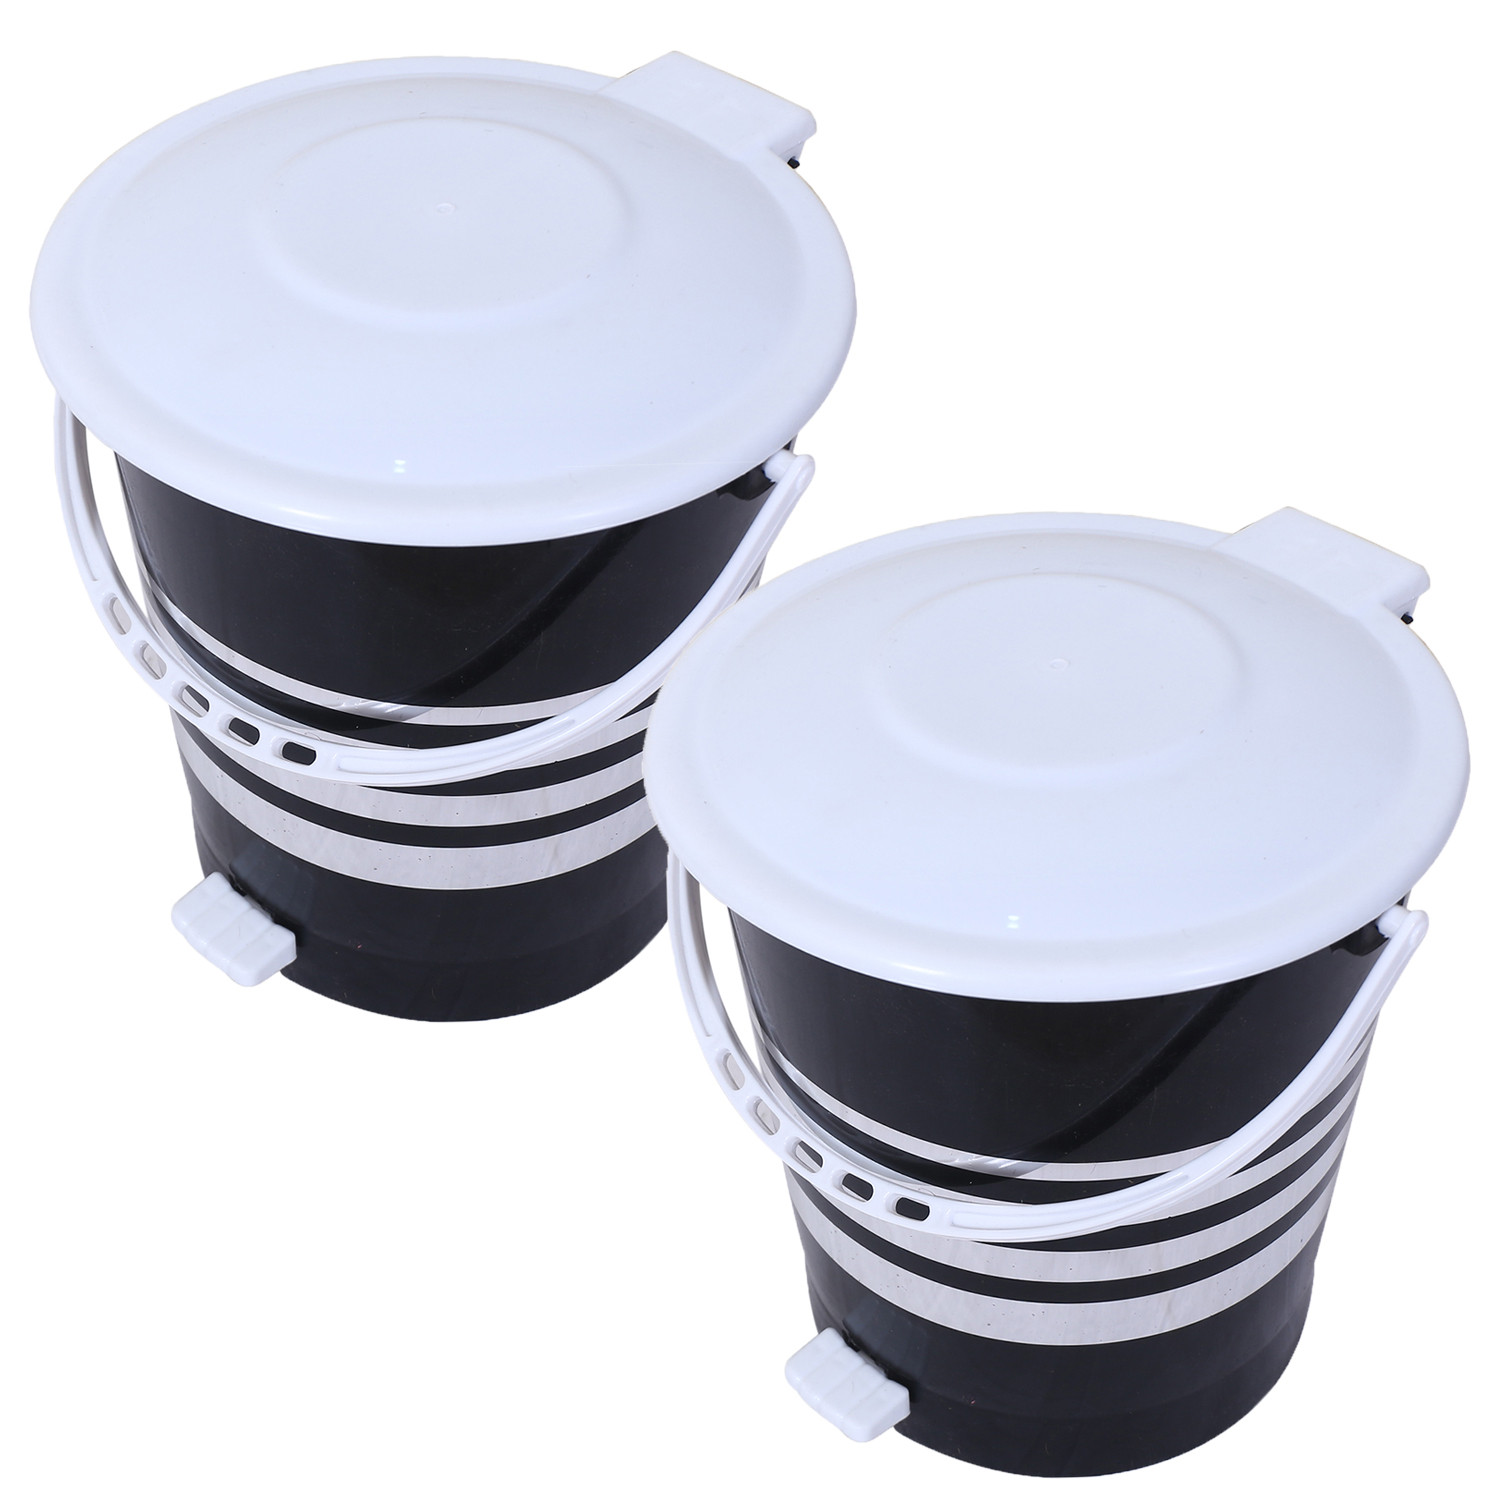 Kuber Industries Dustbin|Plastic Pedal Dustbin|Kitchen Inner Bucket Waste Paper Bin|Dustbin For Bedroom|Silver Layer 10 Litre Dustbin (Black)